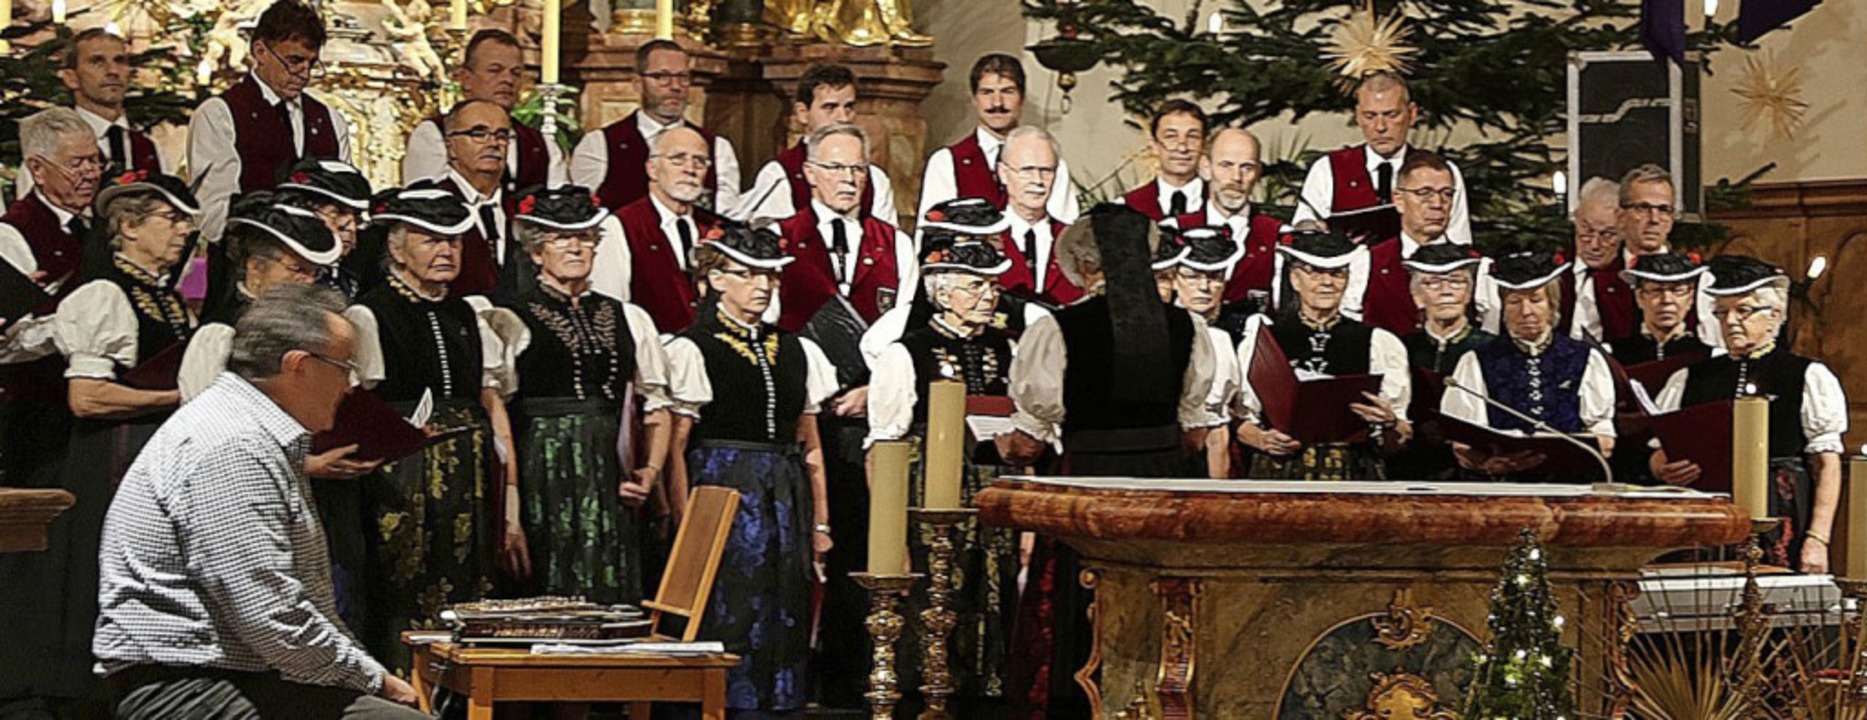 Singen und musizieren gemeinsam bei de...Landfrauenchor und Männergesangverein   | Foto: Heinrich Fehrenbach